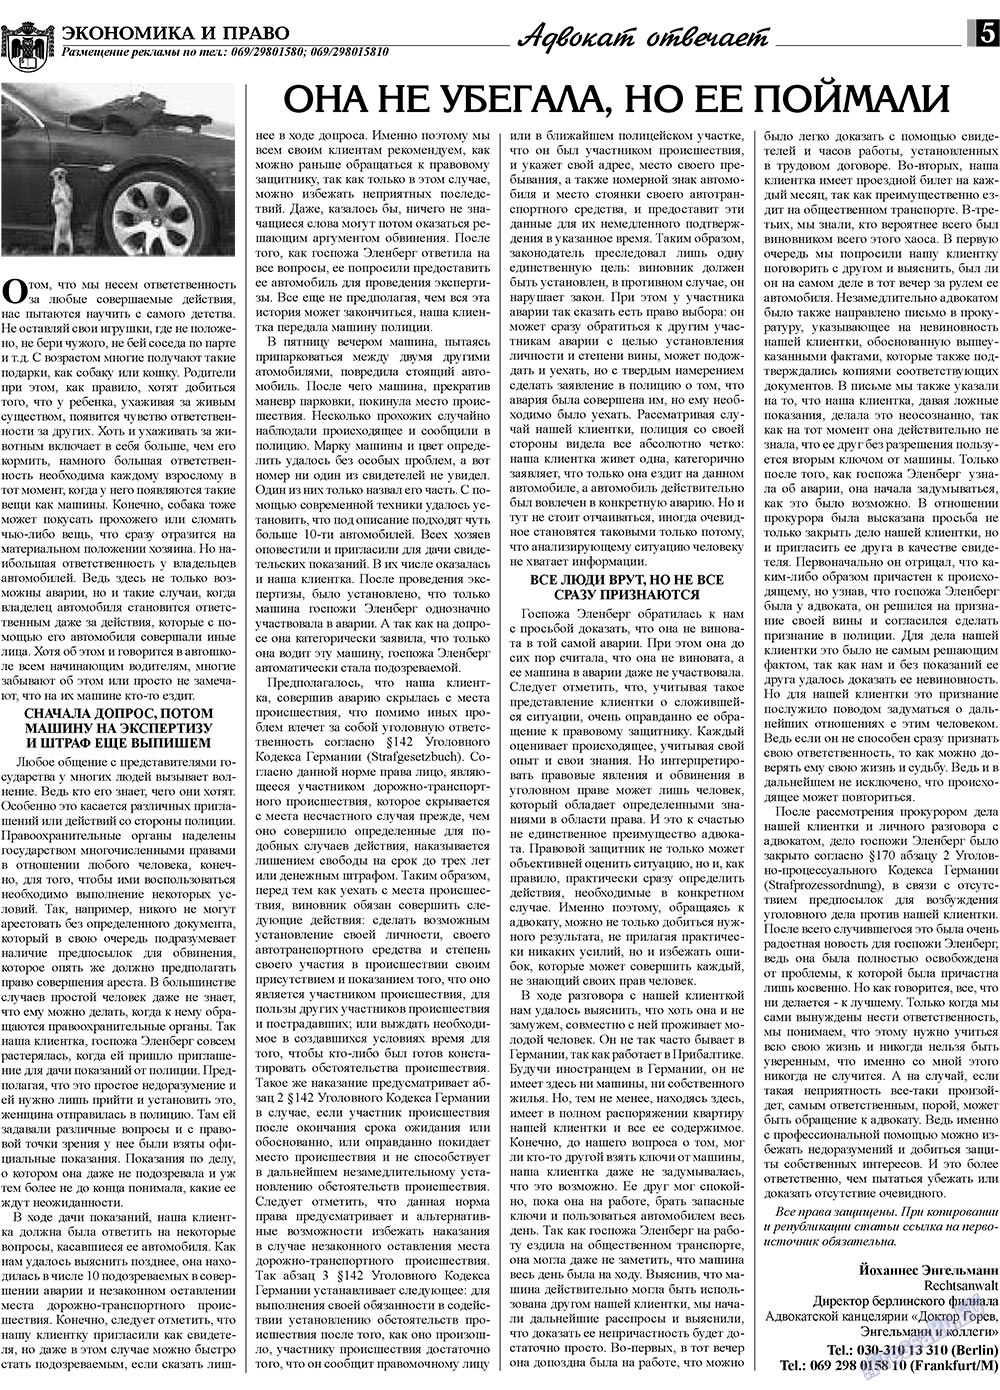 Экономика и право, газета. 2009 №12 стр.5